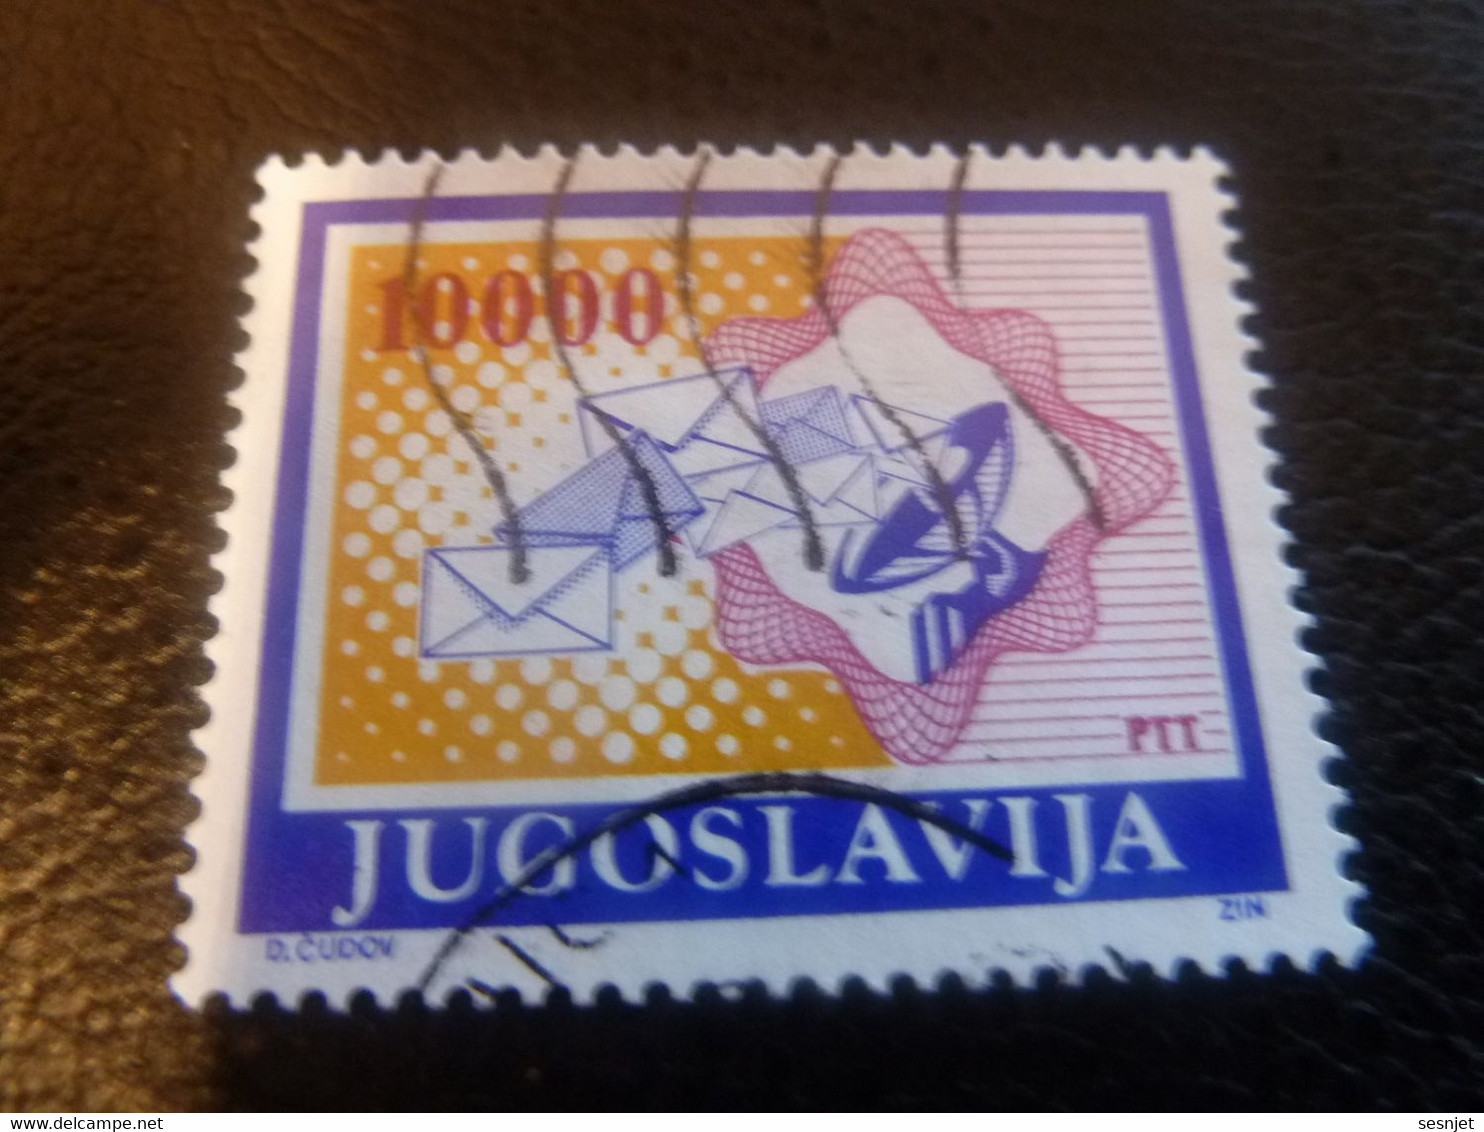 Ptt - Jugoslavija - D Cudov - Val 10000 - Multicolore - Oblitéré - - Usati